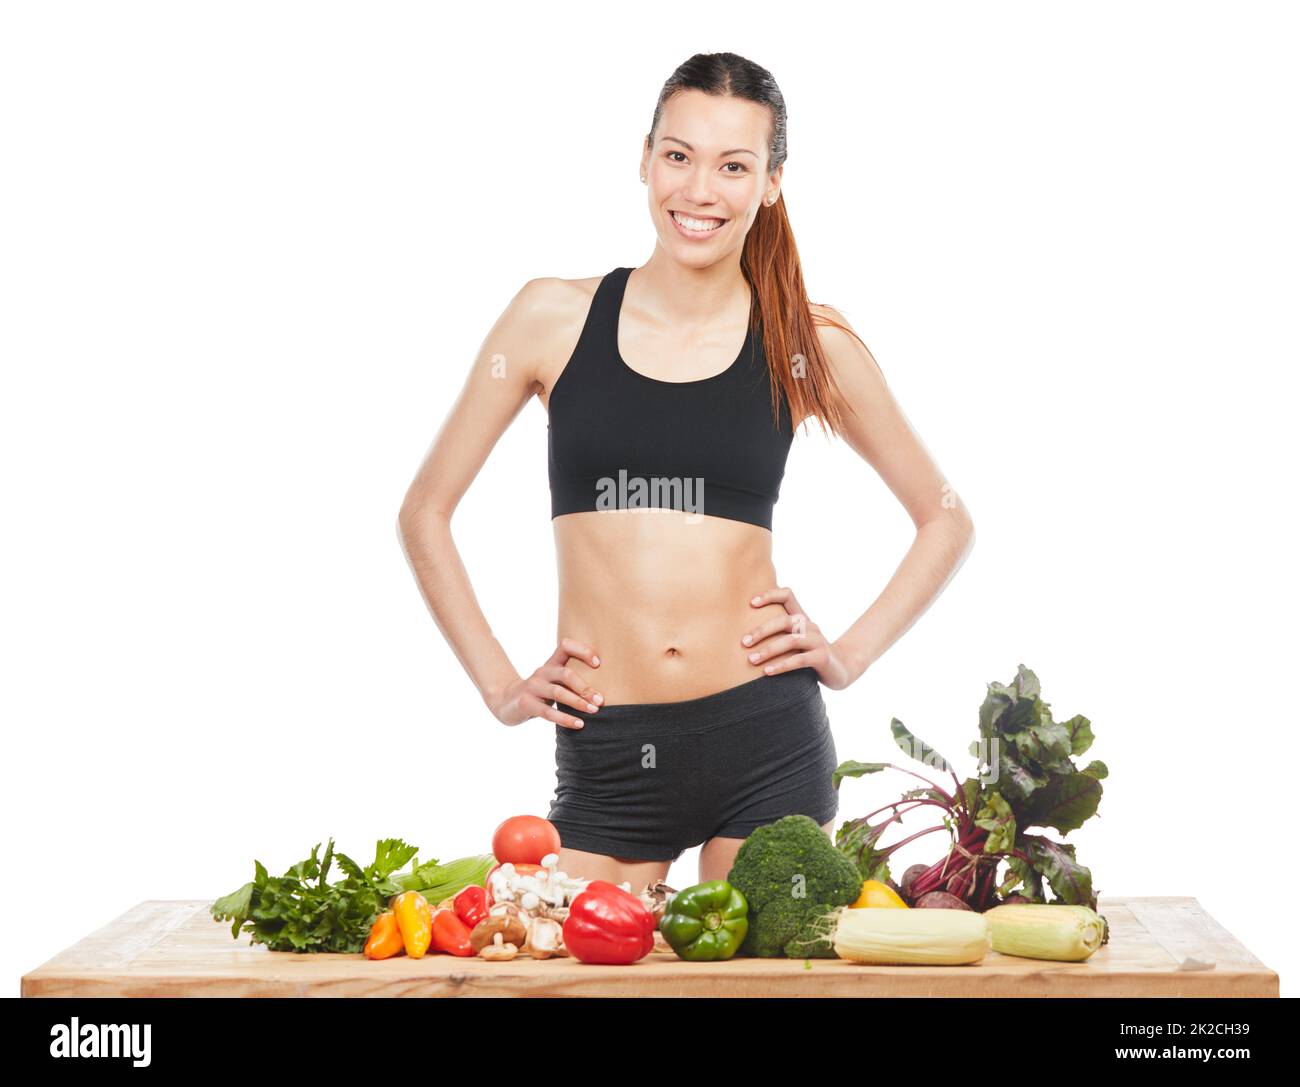 Faites manger sainement votre habitude. Studio portrait d'une jeune femme attrayante posant avec une table pleine de légumes sur un fond blanc. Banque D'Images